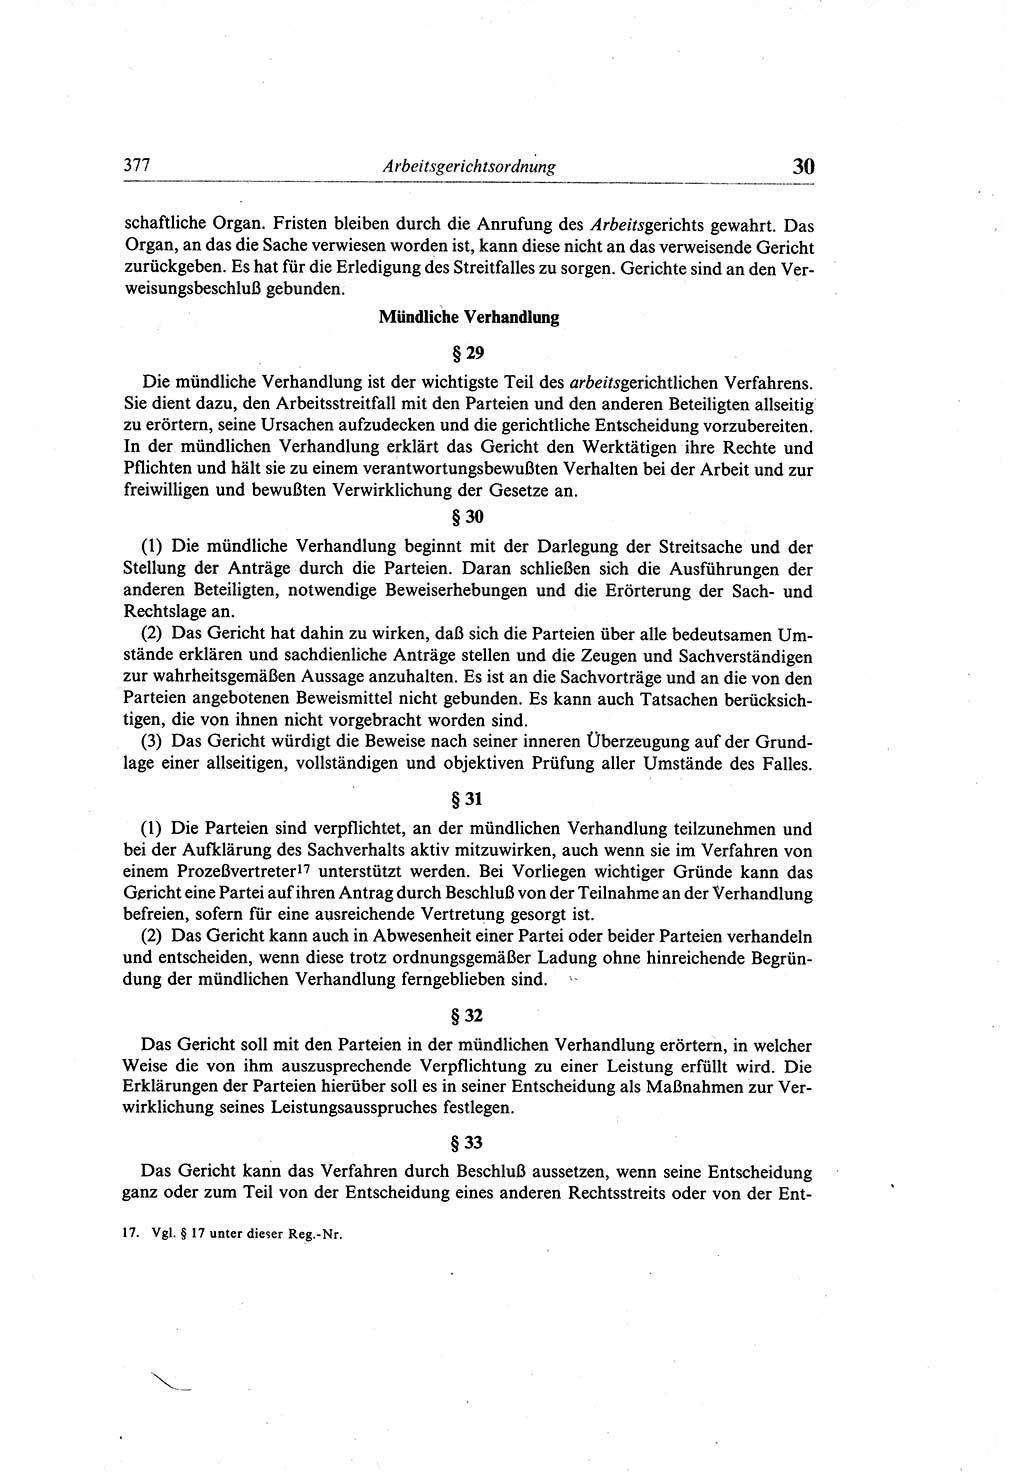 Gesetzbuch der Arbeit (GBA) und andere ausgewählte rechtliche Bestimmungen [Deutsche Demokratische Republik (DDR)] 1968, Seite 377 (GBA DDR 1968, S. 377)